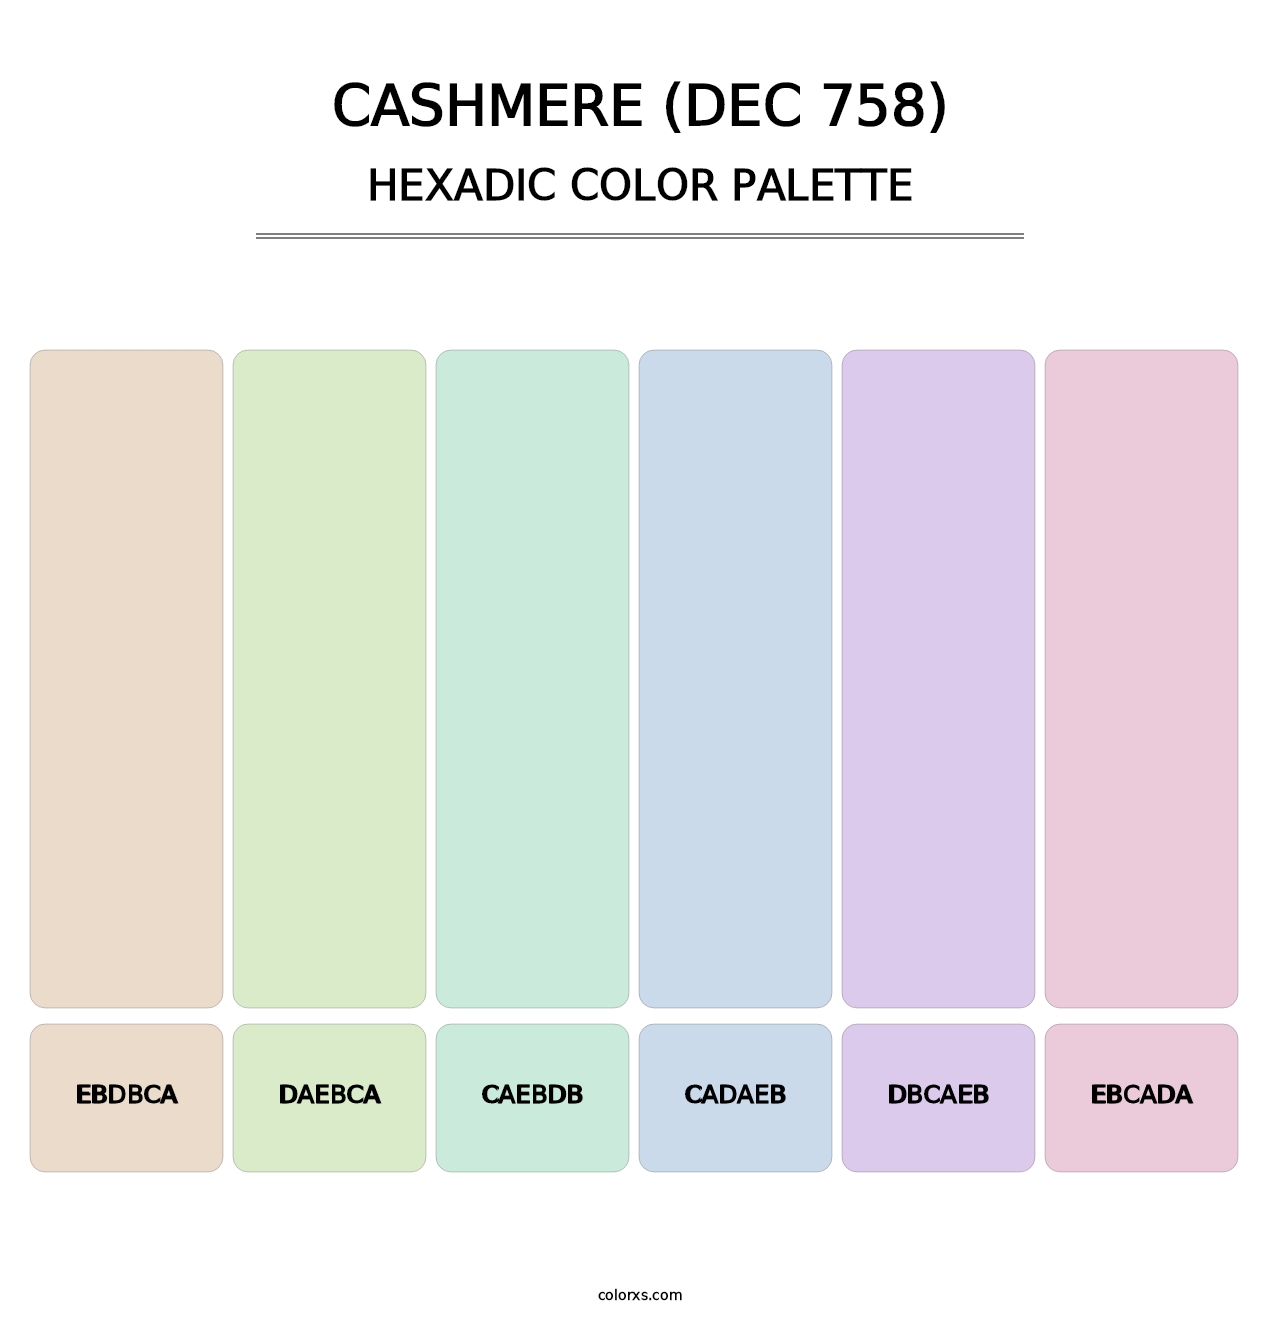 Cashmere (DEC 758) - Hexadic Color Palette